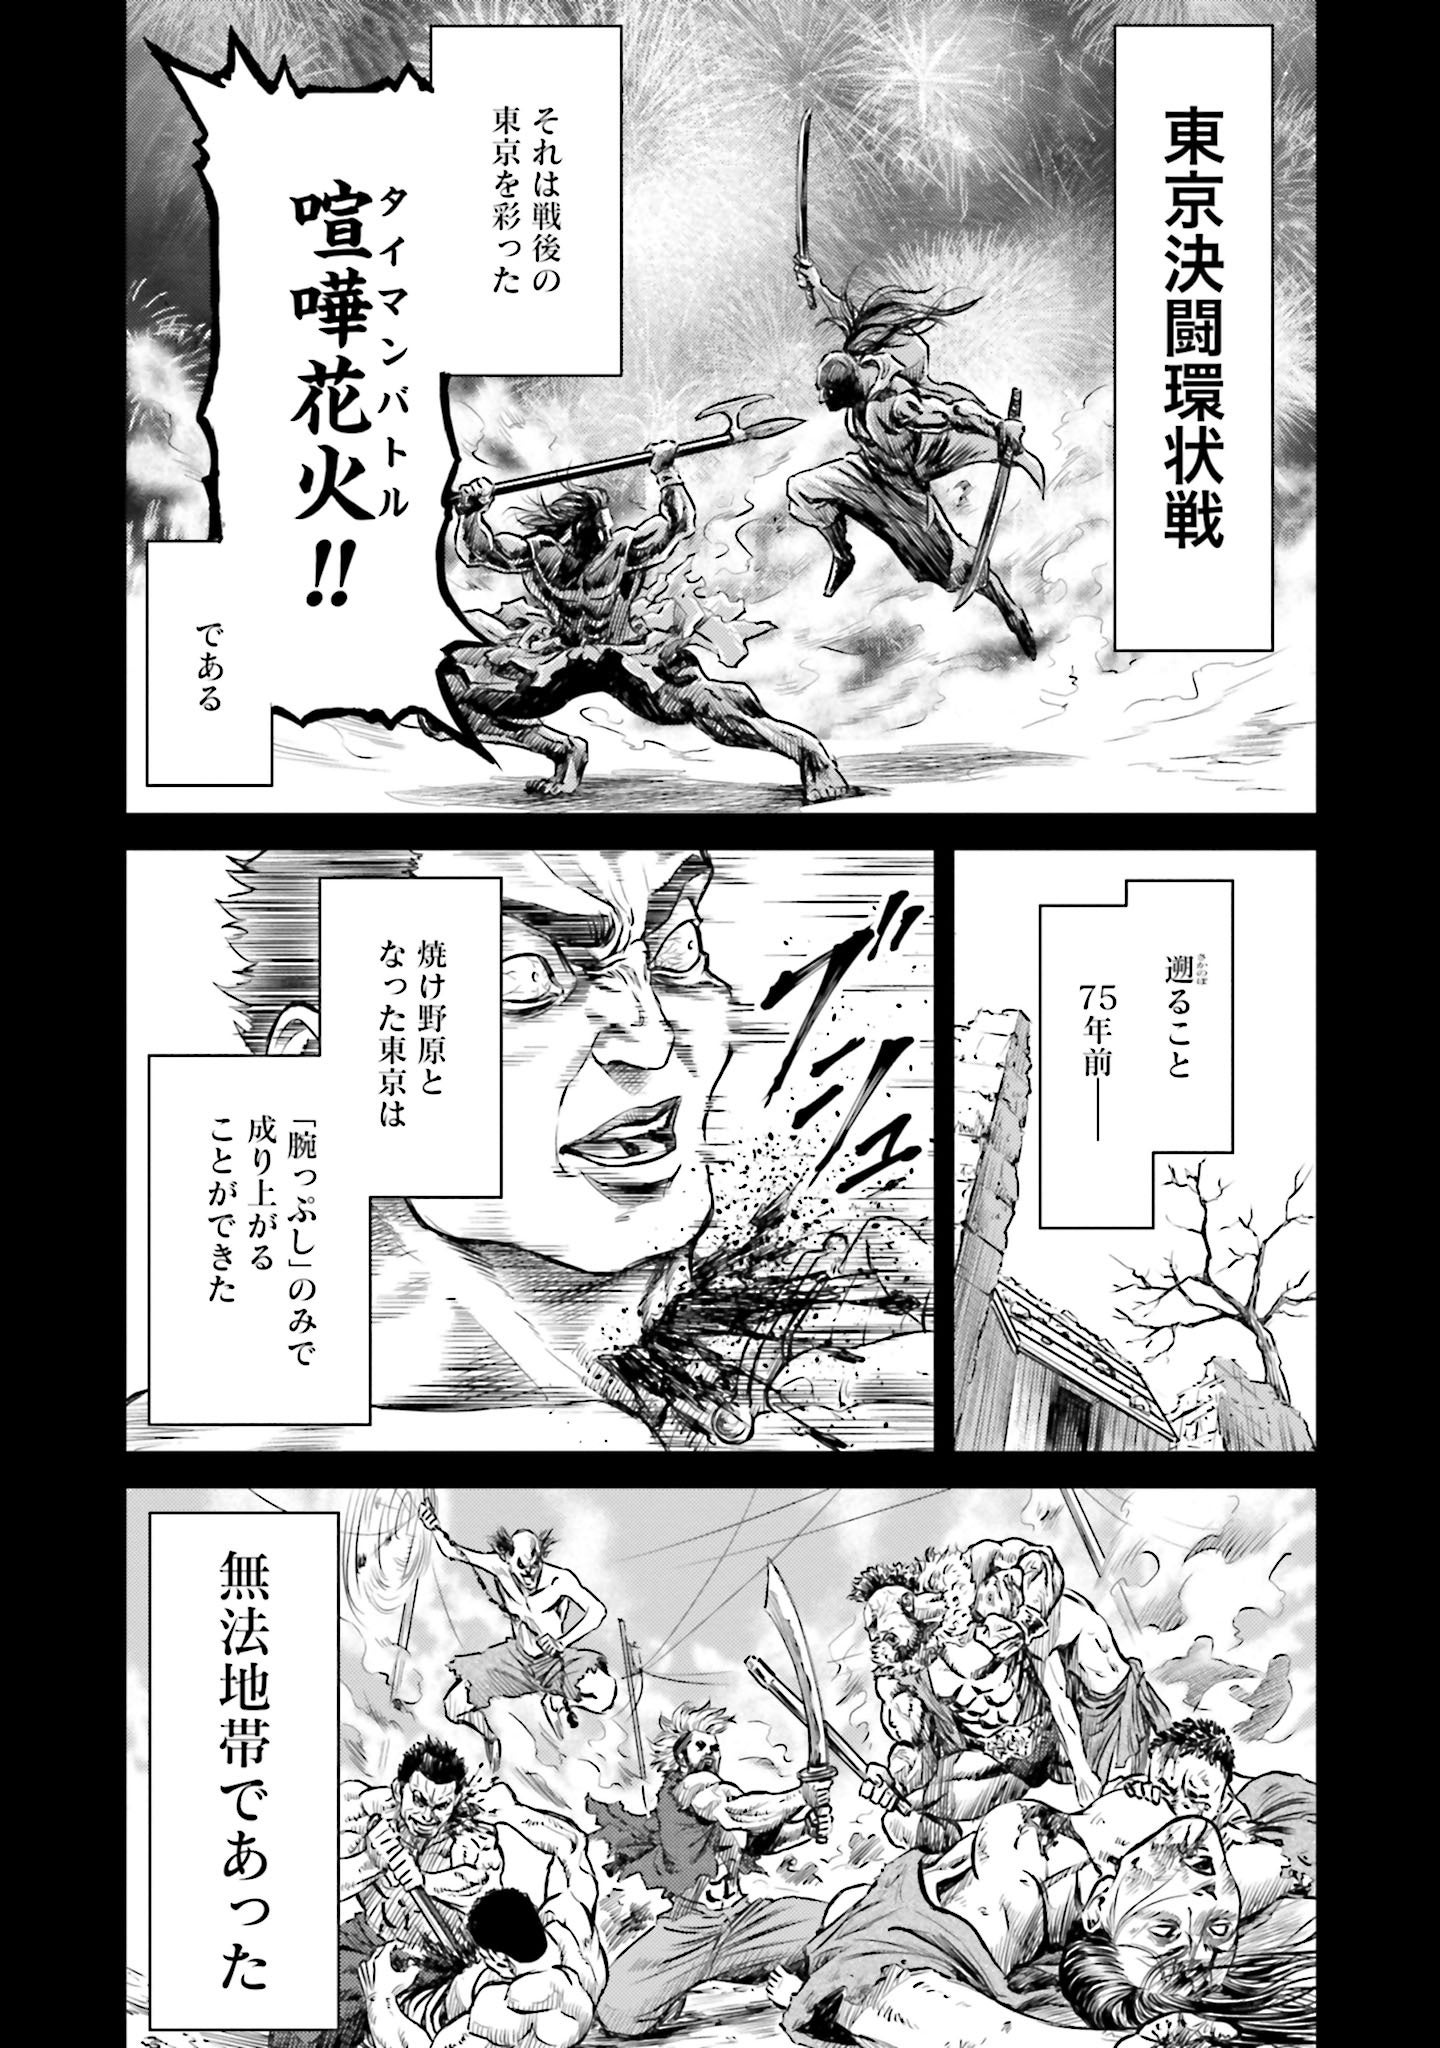 目白駅VS鶯谷駅、開幕！『東京決闘環状戦』第14巻6月20日発売！